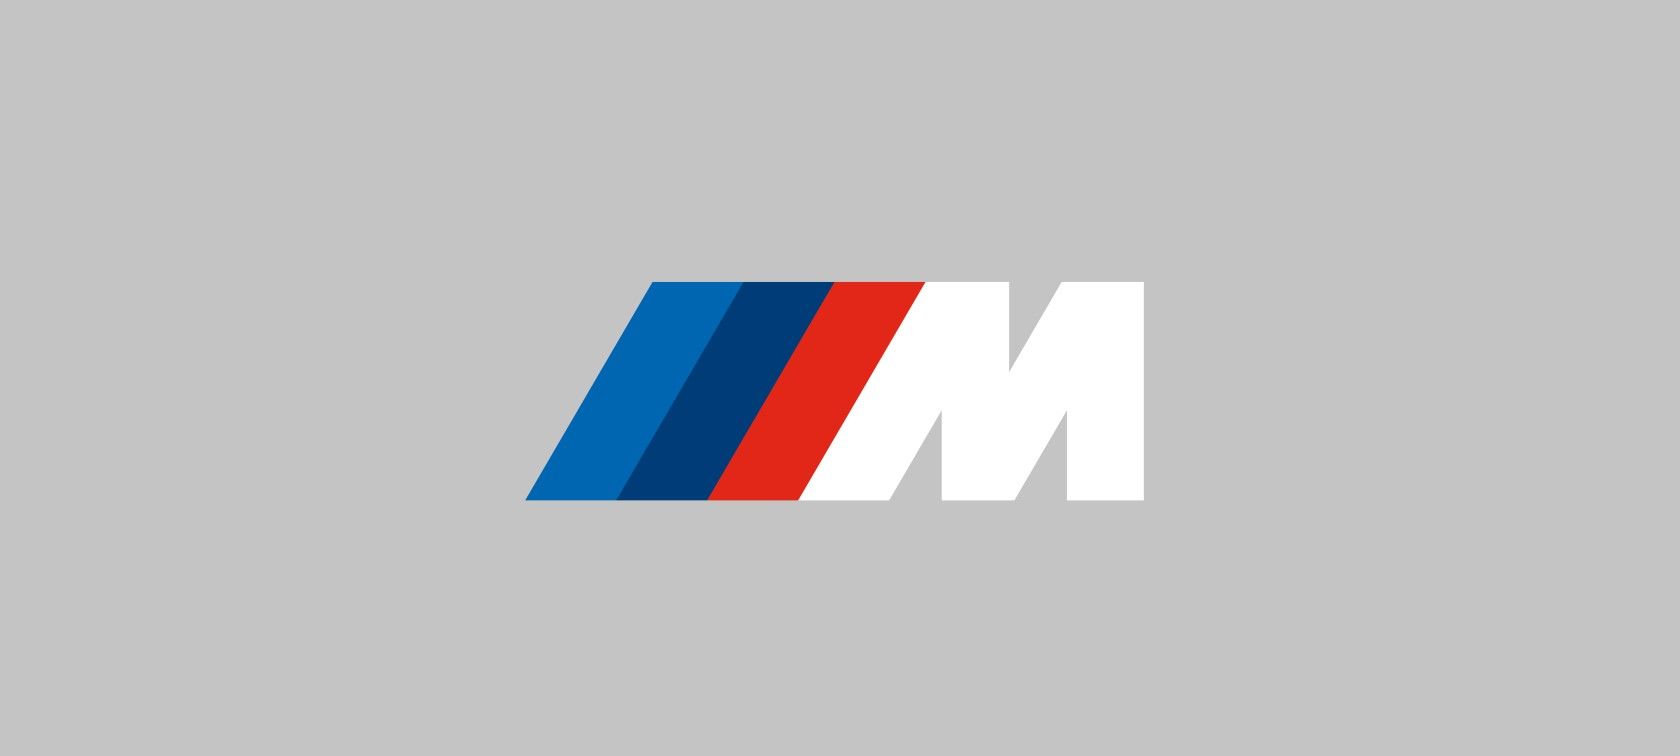 Qué representa el nuevo logo que lucirán los BMW M en 2022?